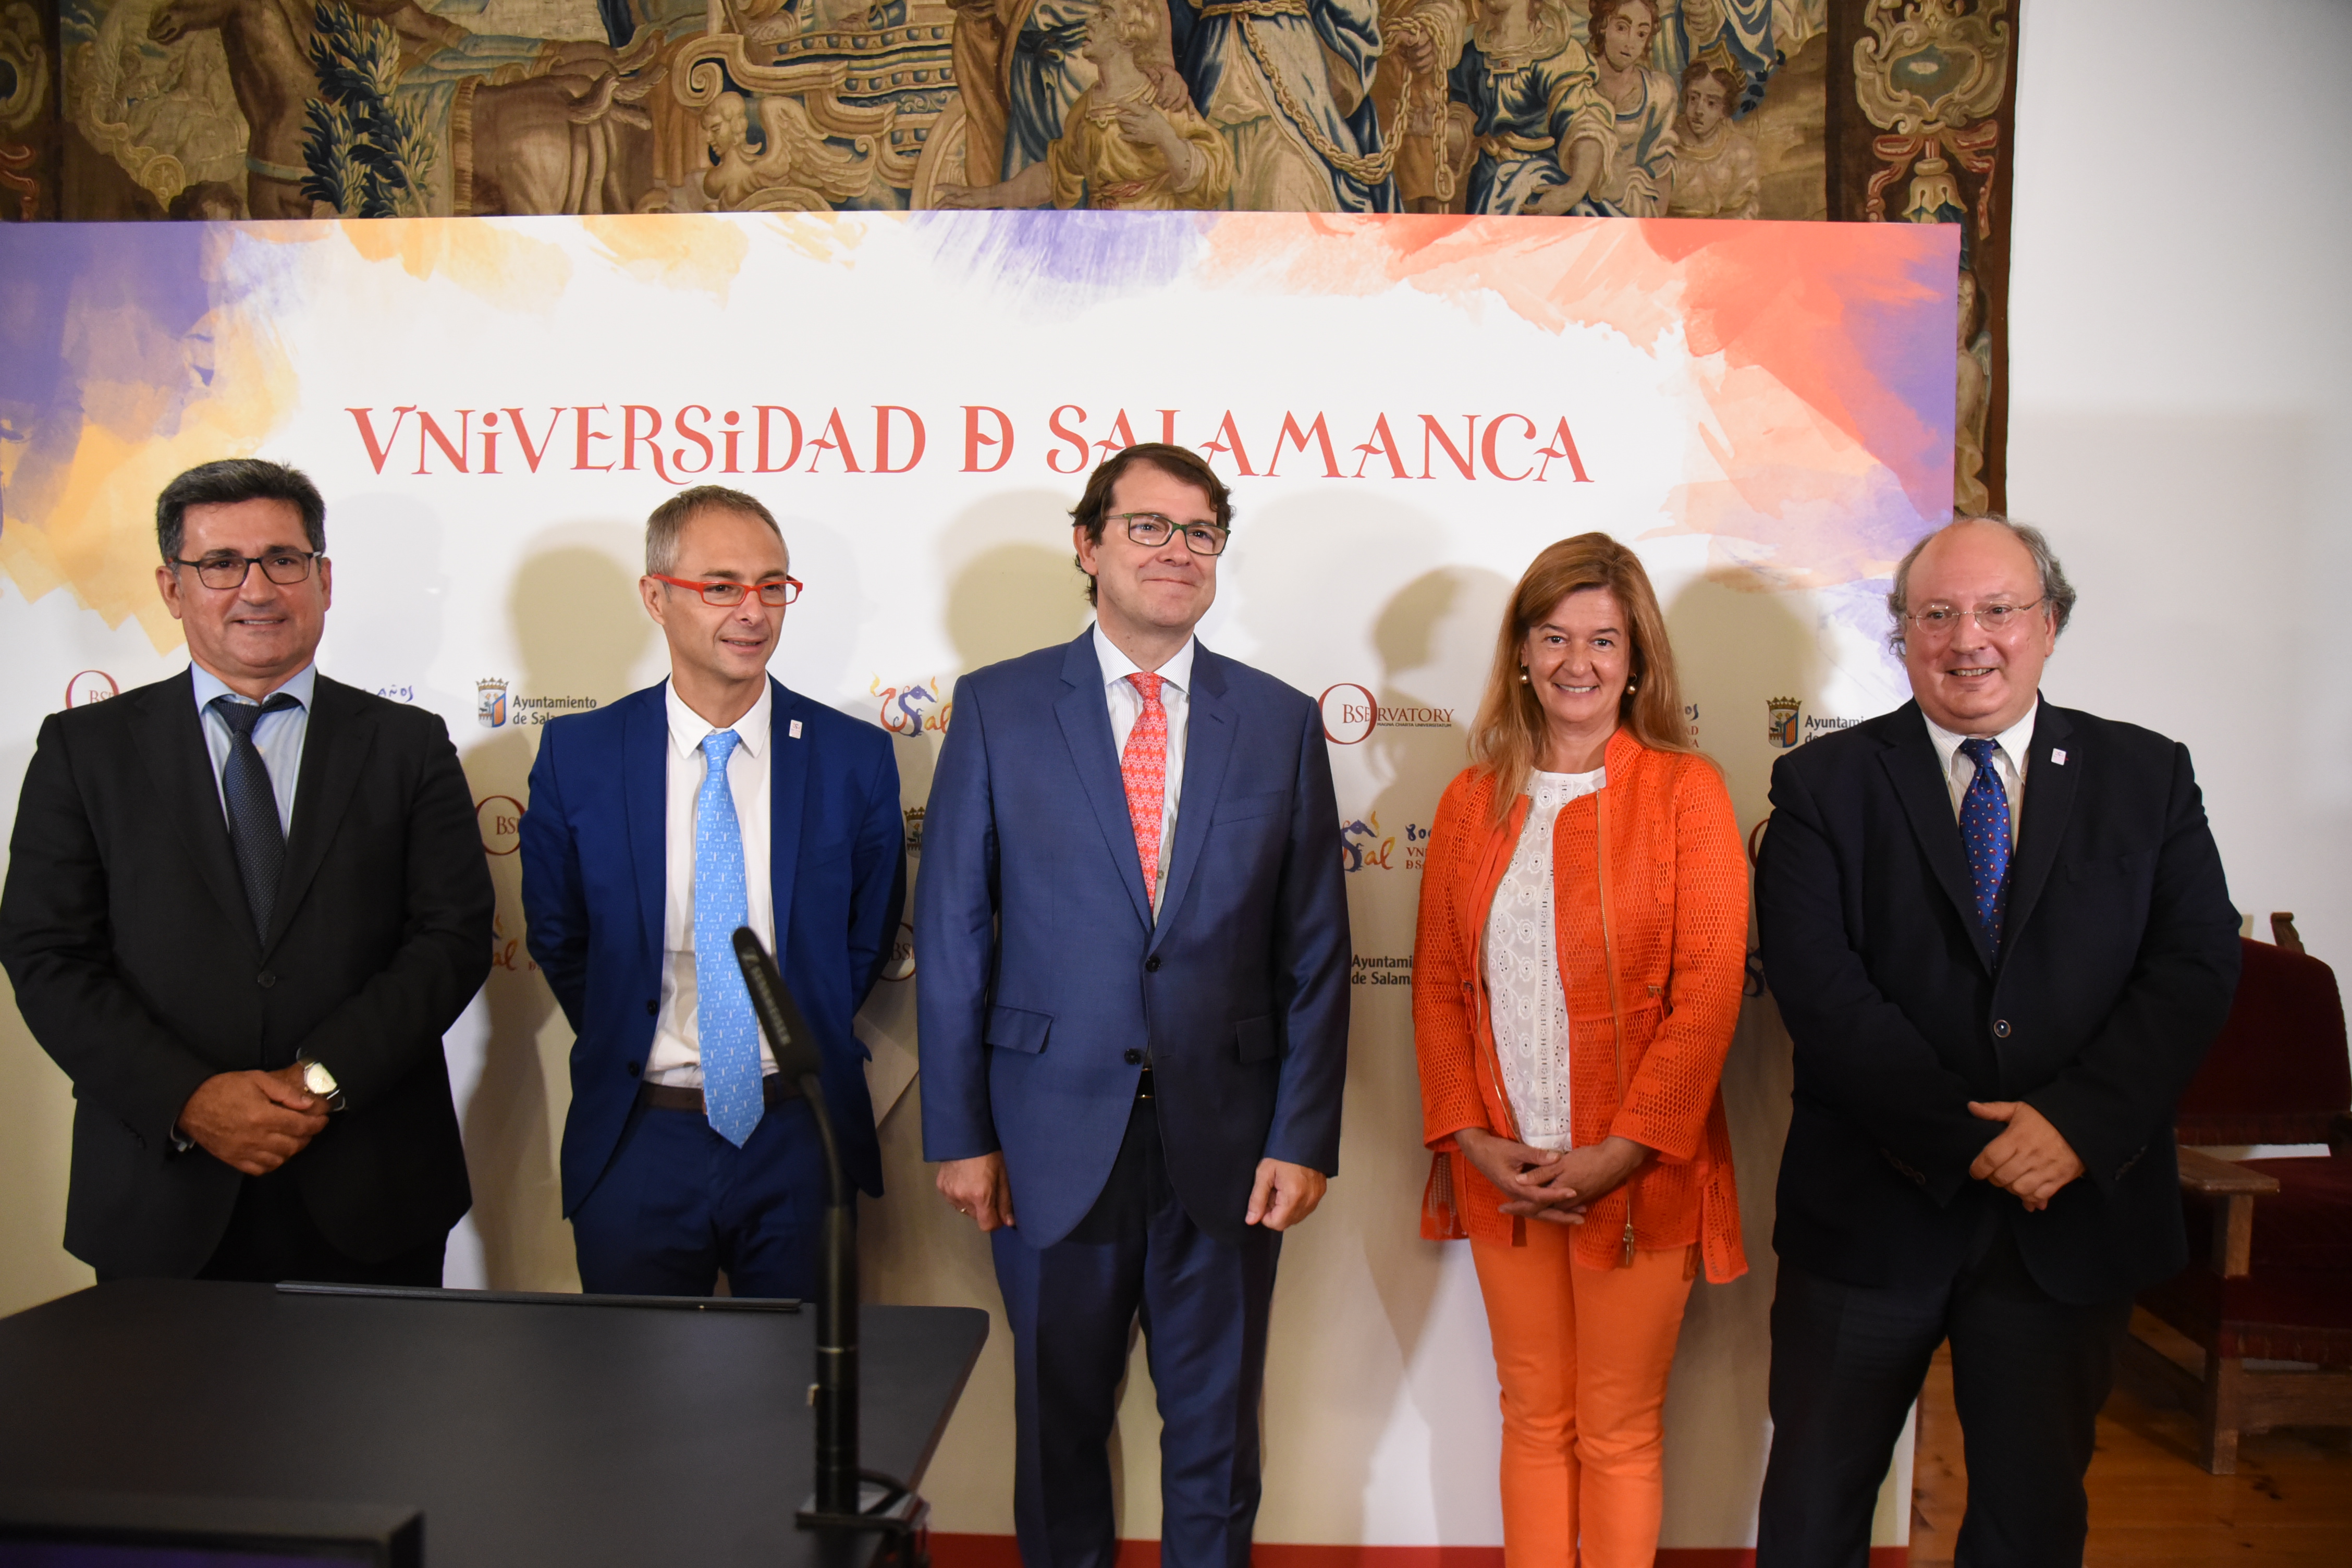 La Universidad de Salamanca, epicentro de la Educación Superior al acoger la XXX Asamblea de la Magna Charta Universitatum por su VIII Centenario